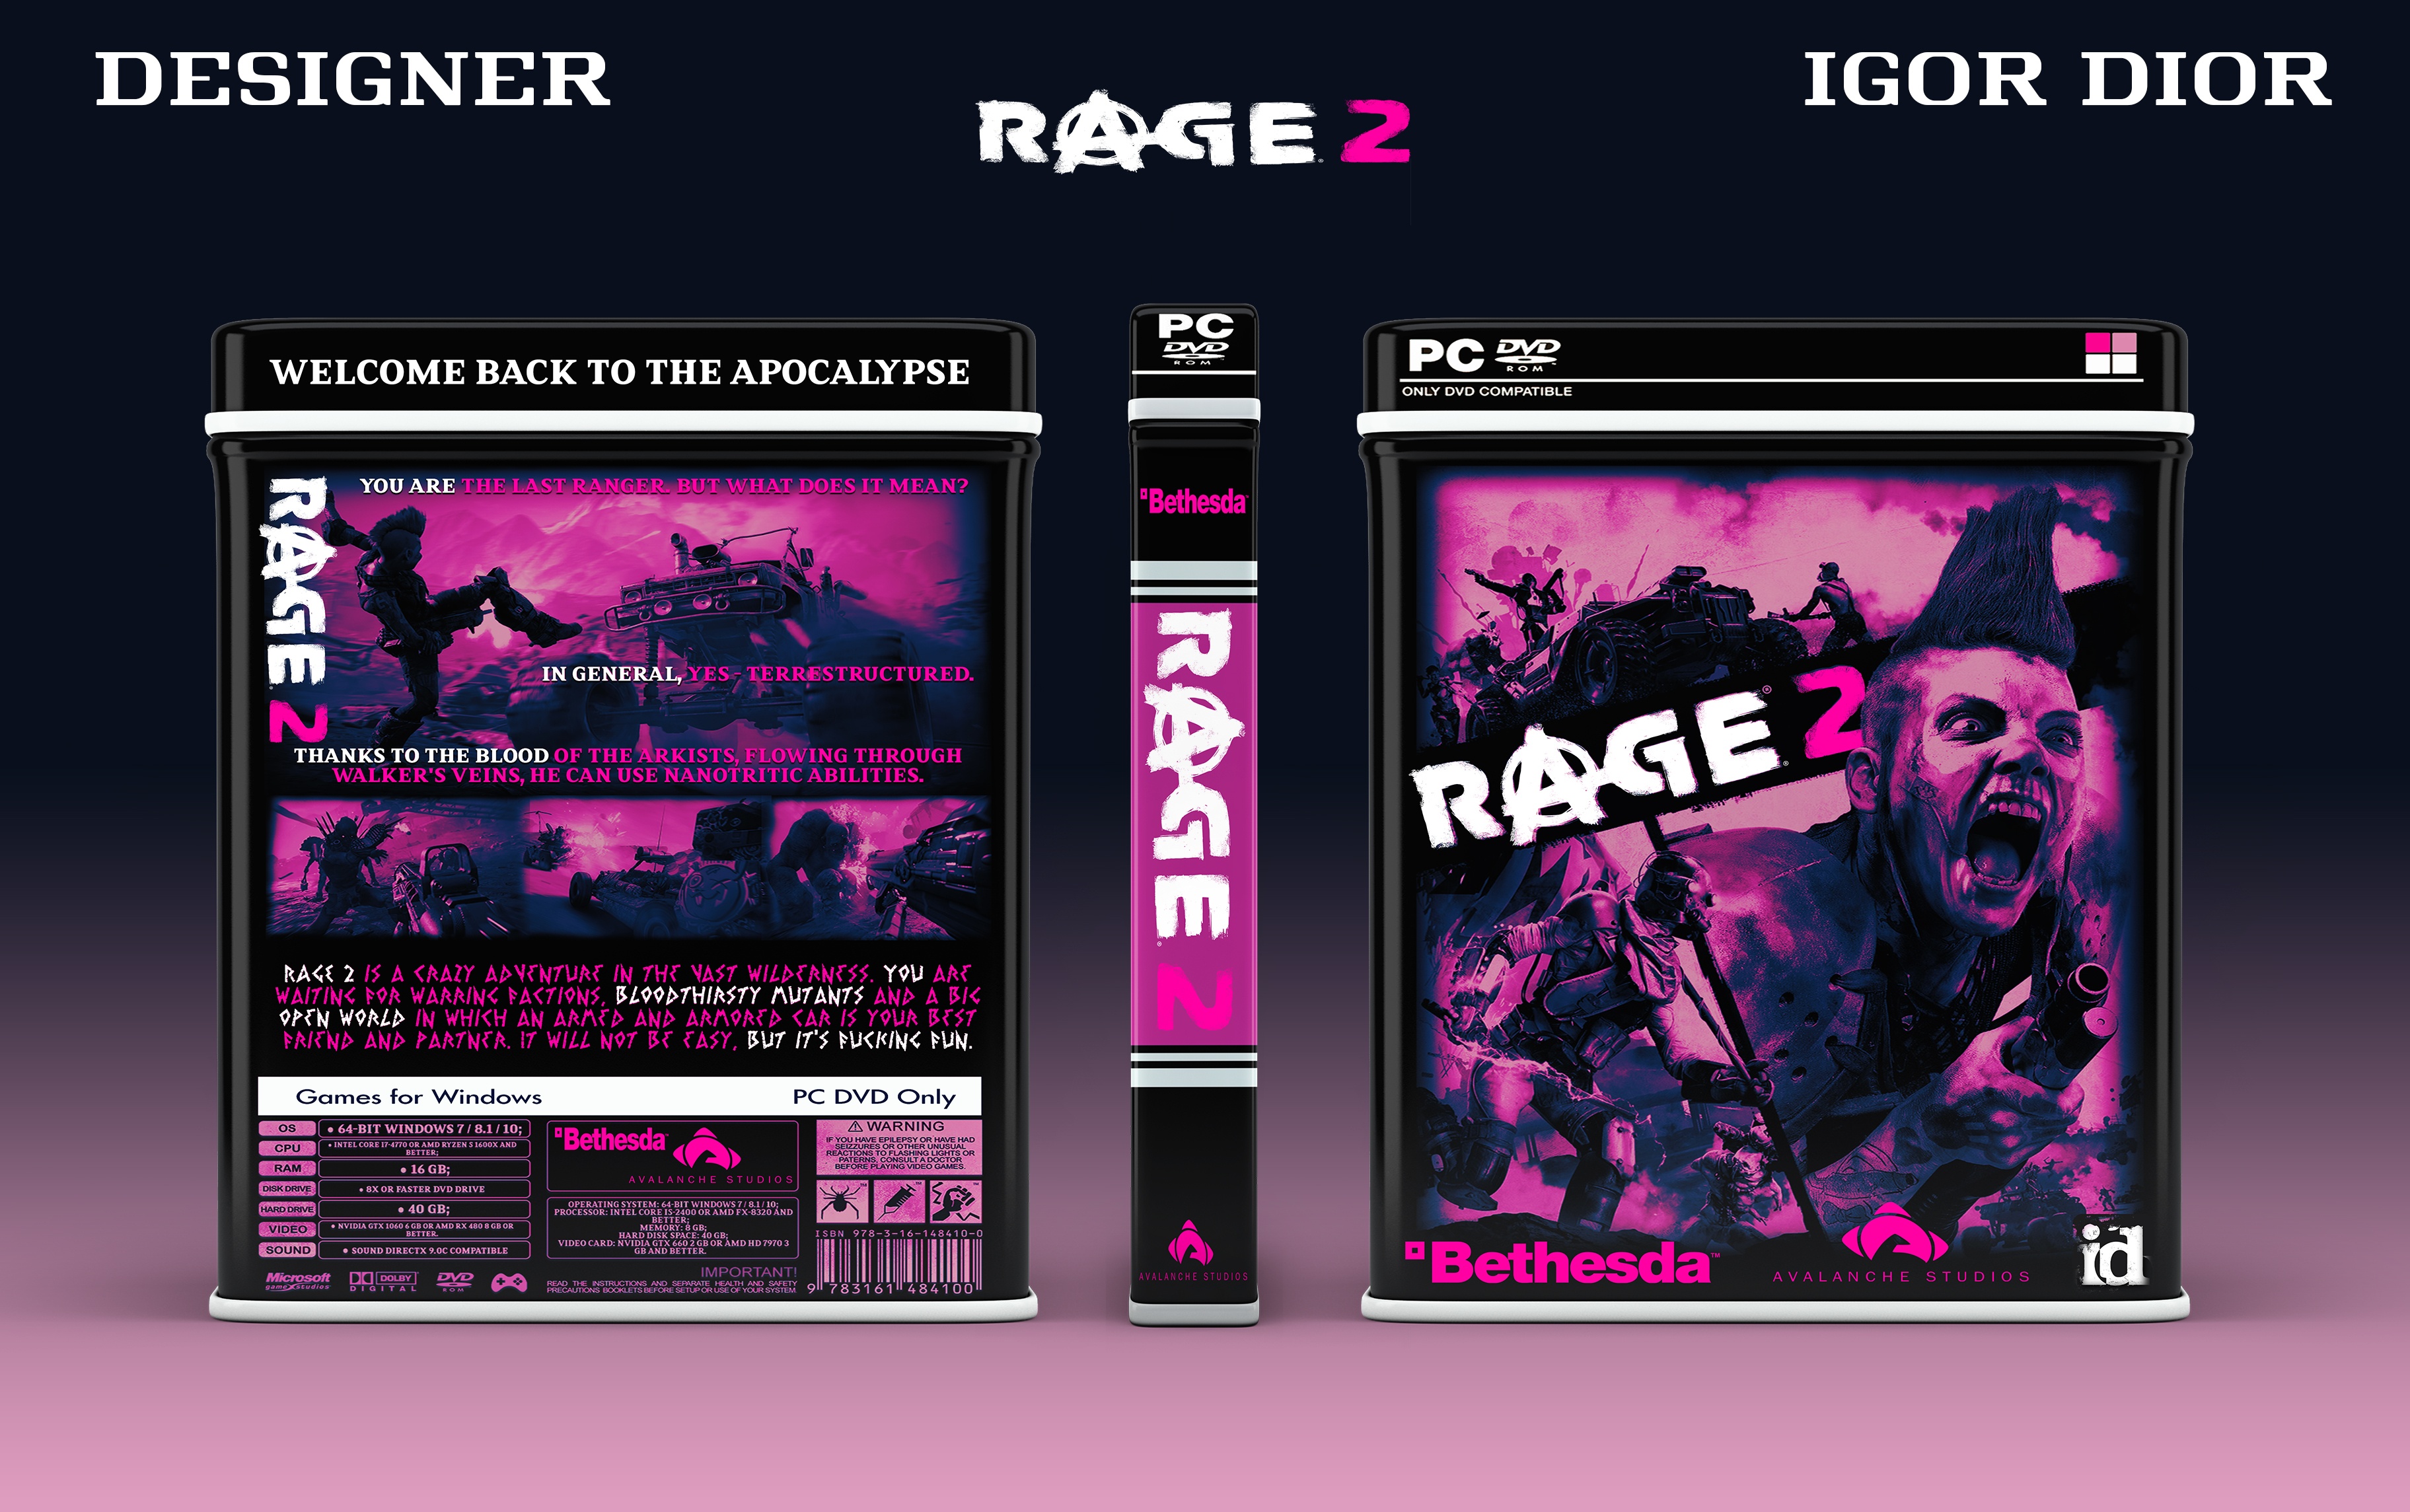 RAGE 2 box cover